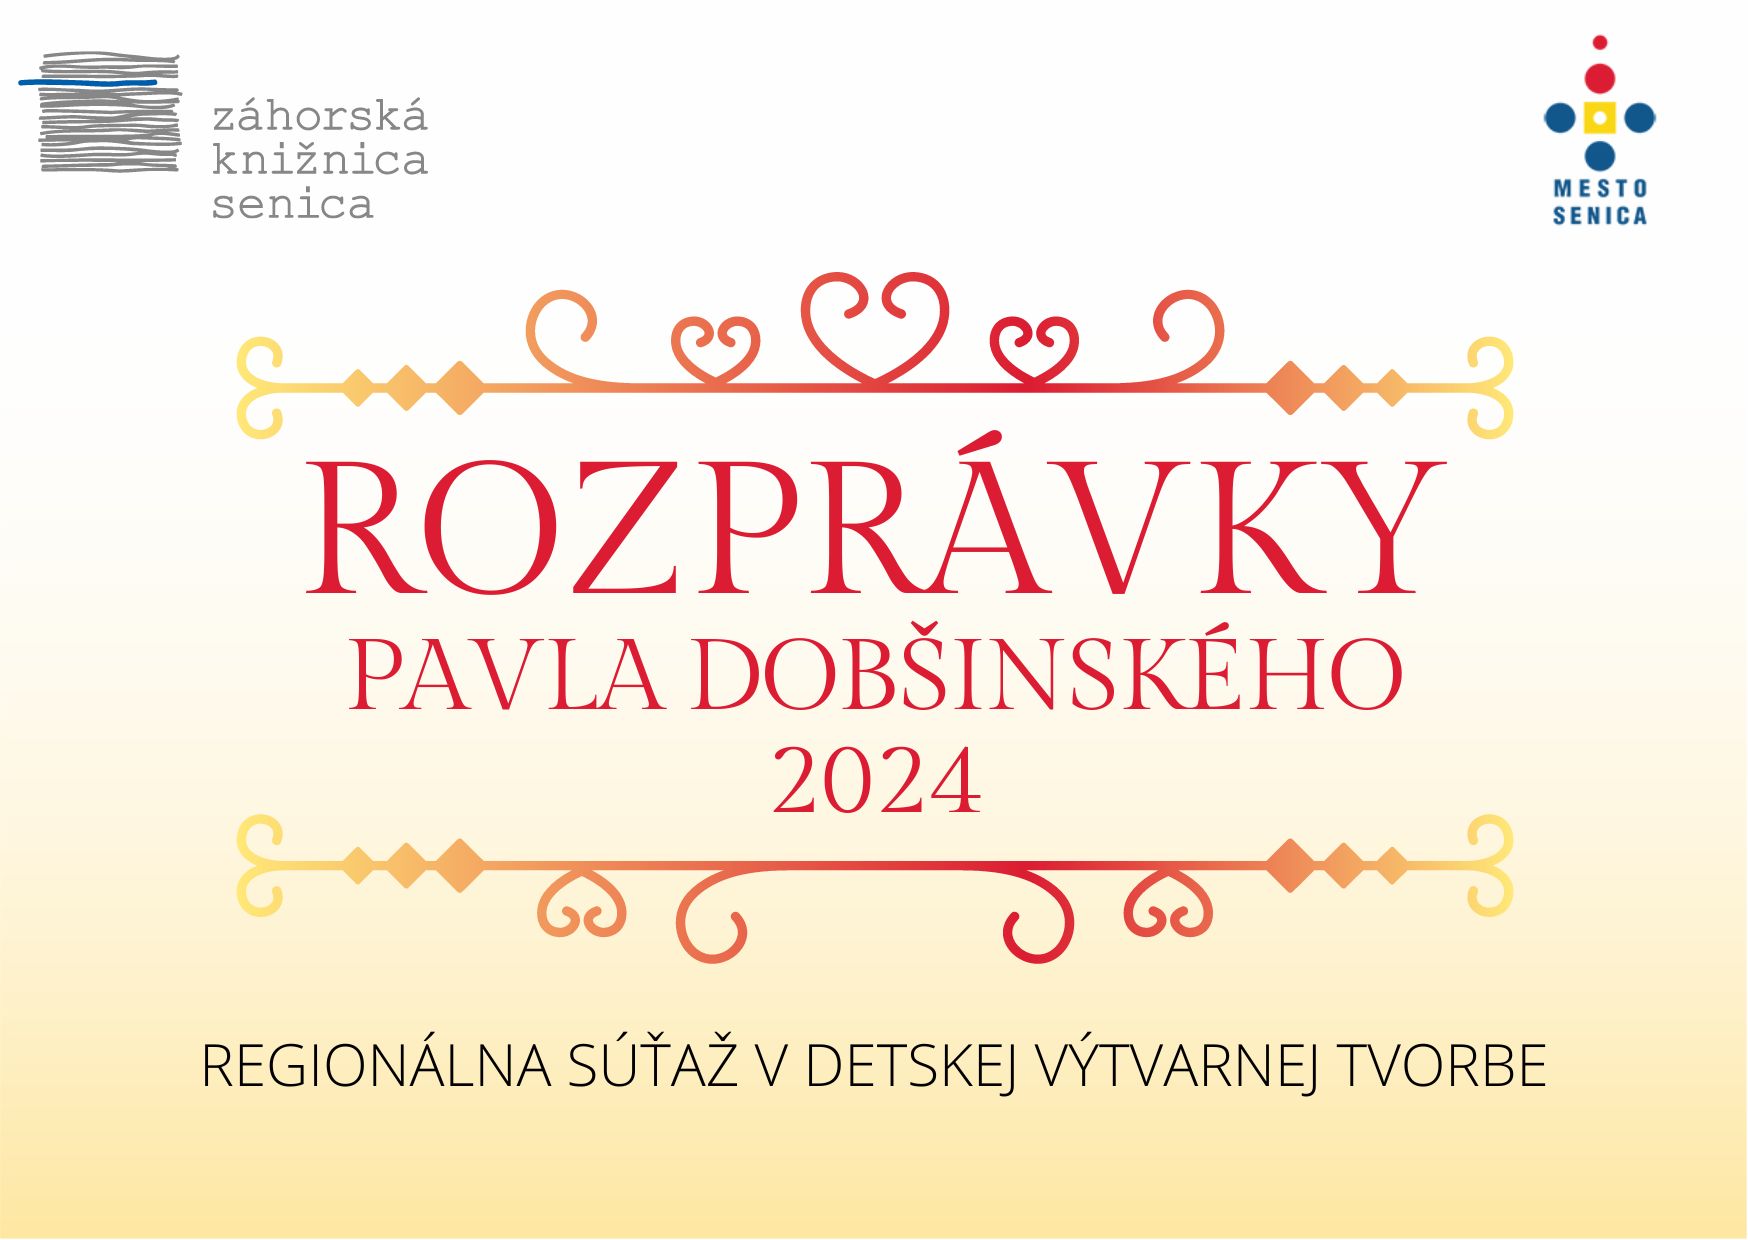 Vyhlasujeme ďalší ročník výtvarnej súťaže Rozprávky Pavla Dobšinského 2024